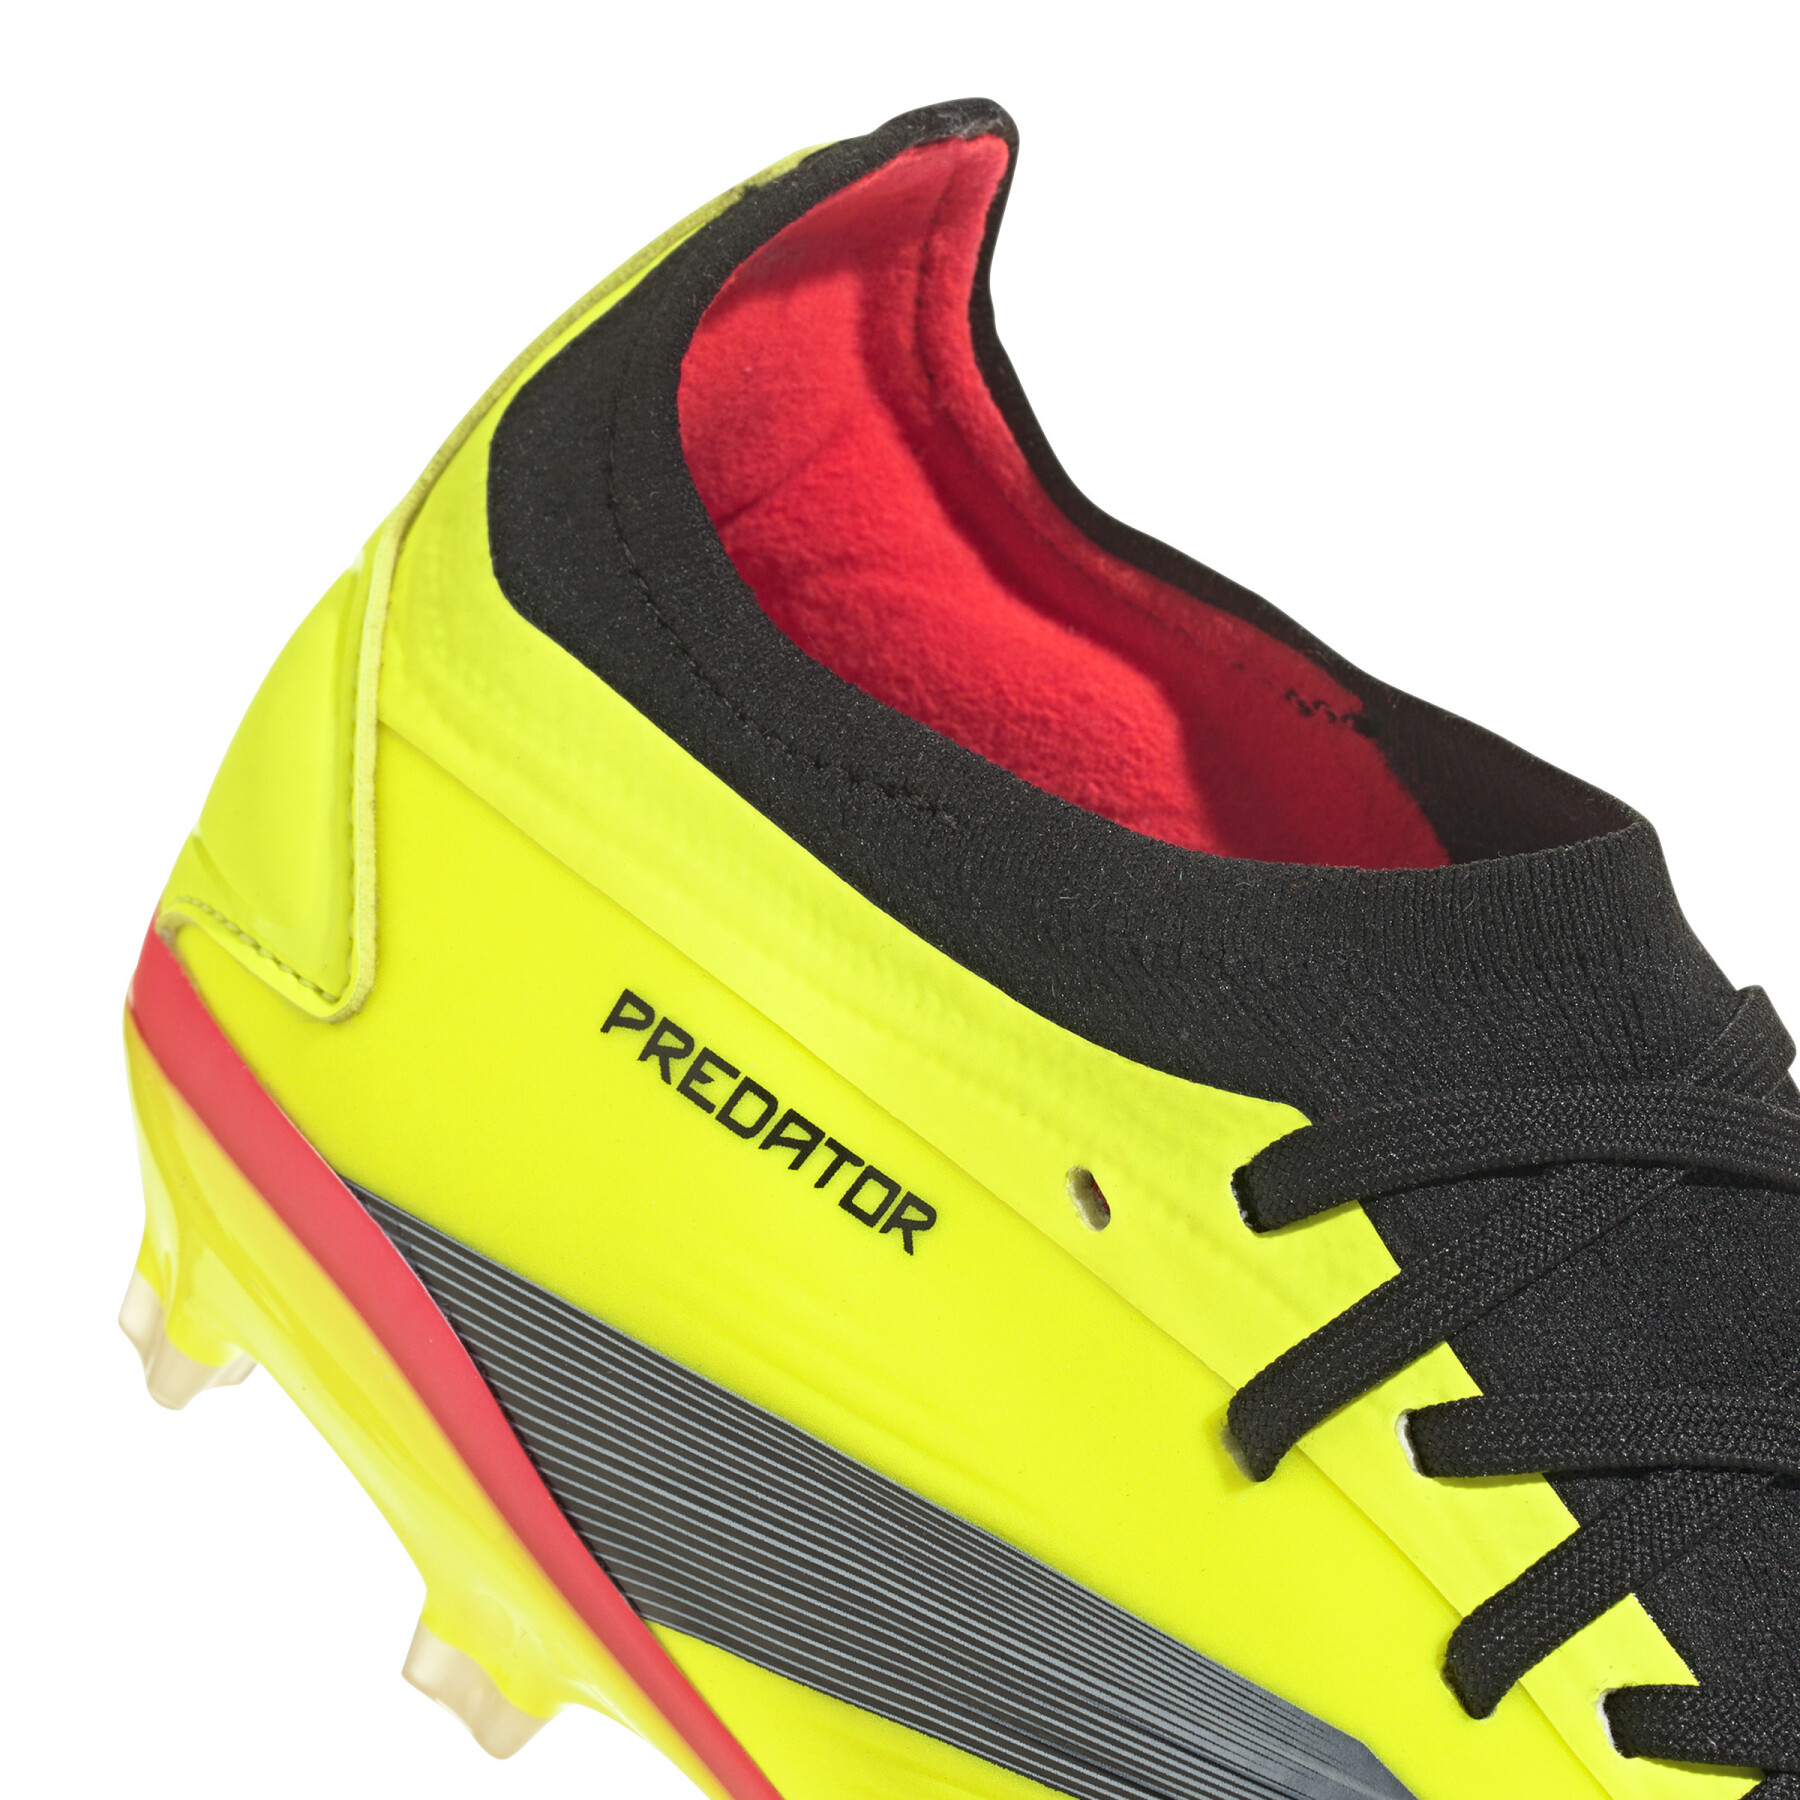 Sapatos de futebol adidas Predator Pro FG